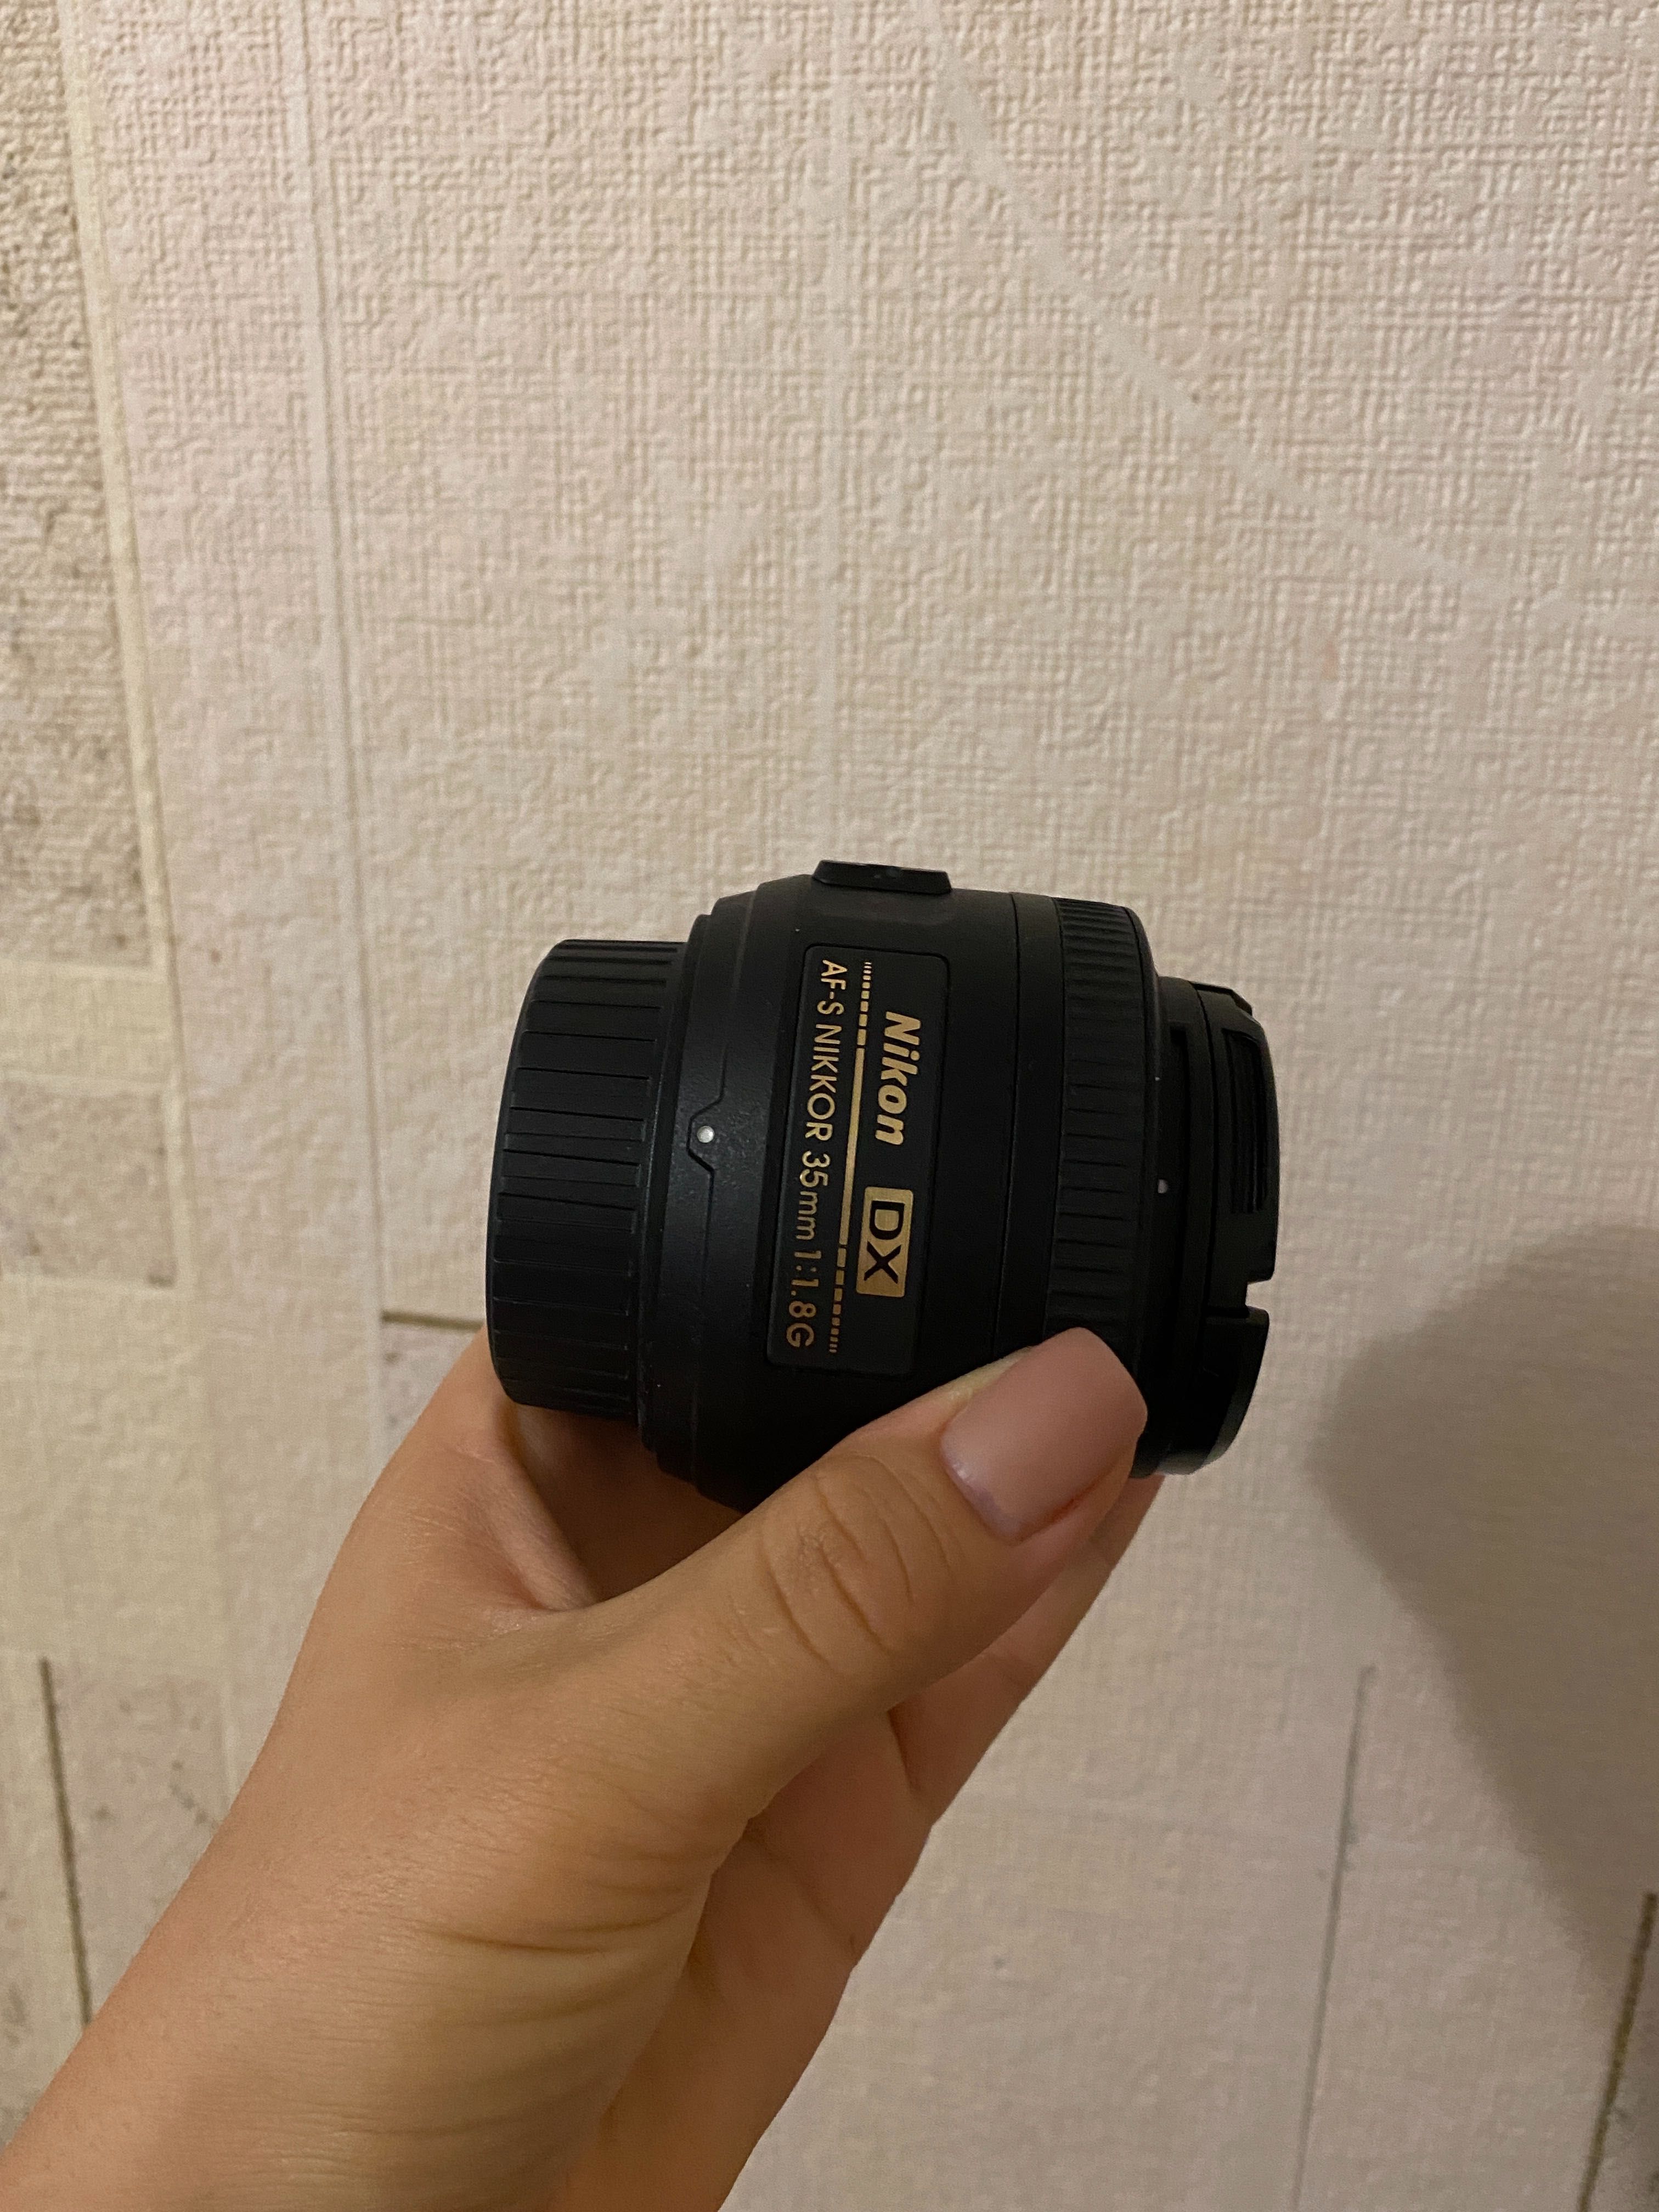 Nikon d5100 (18-55mm)